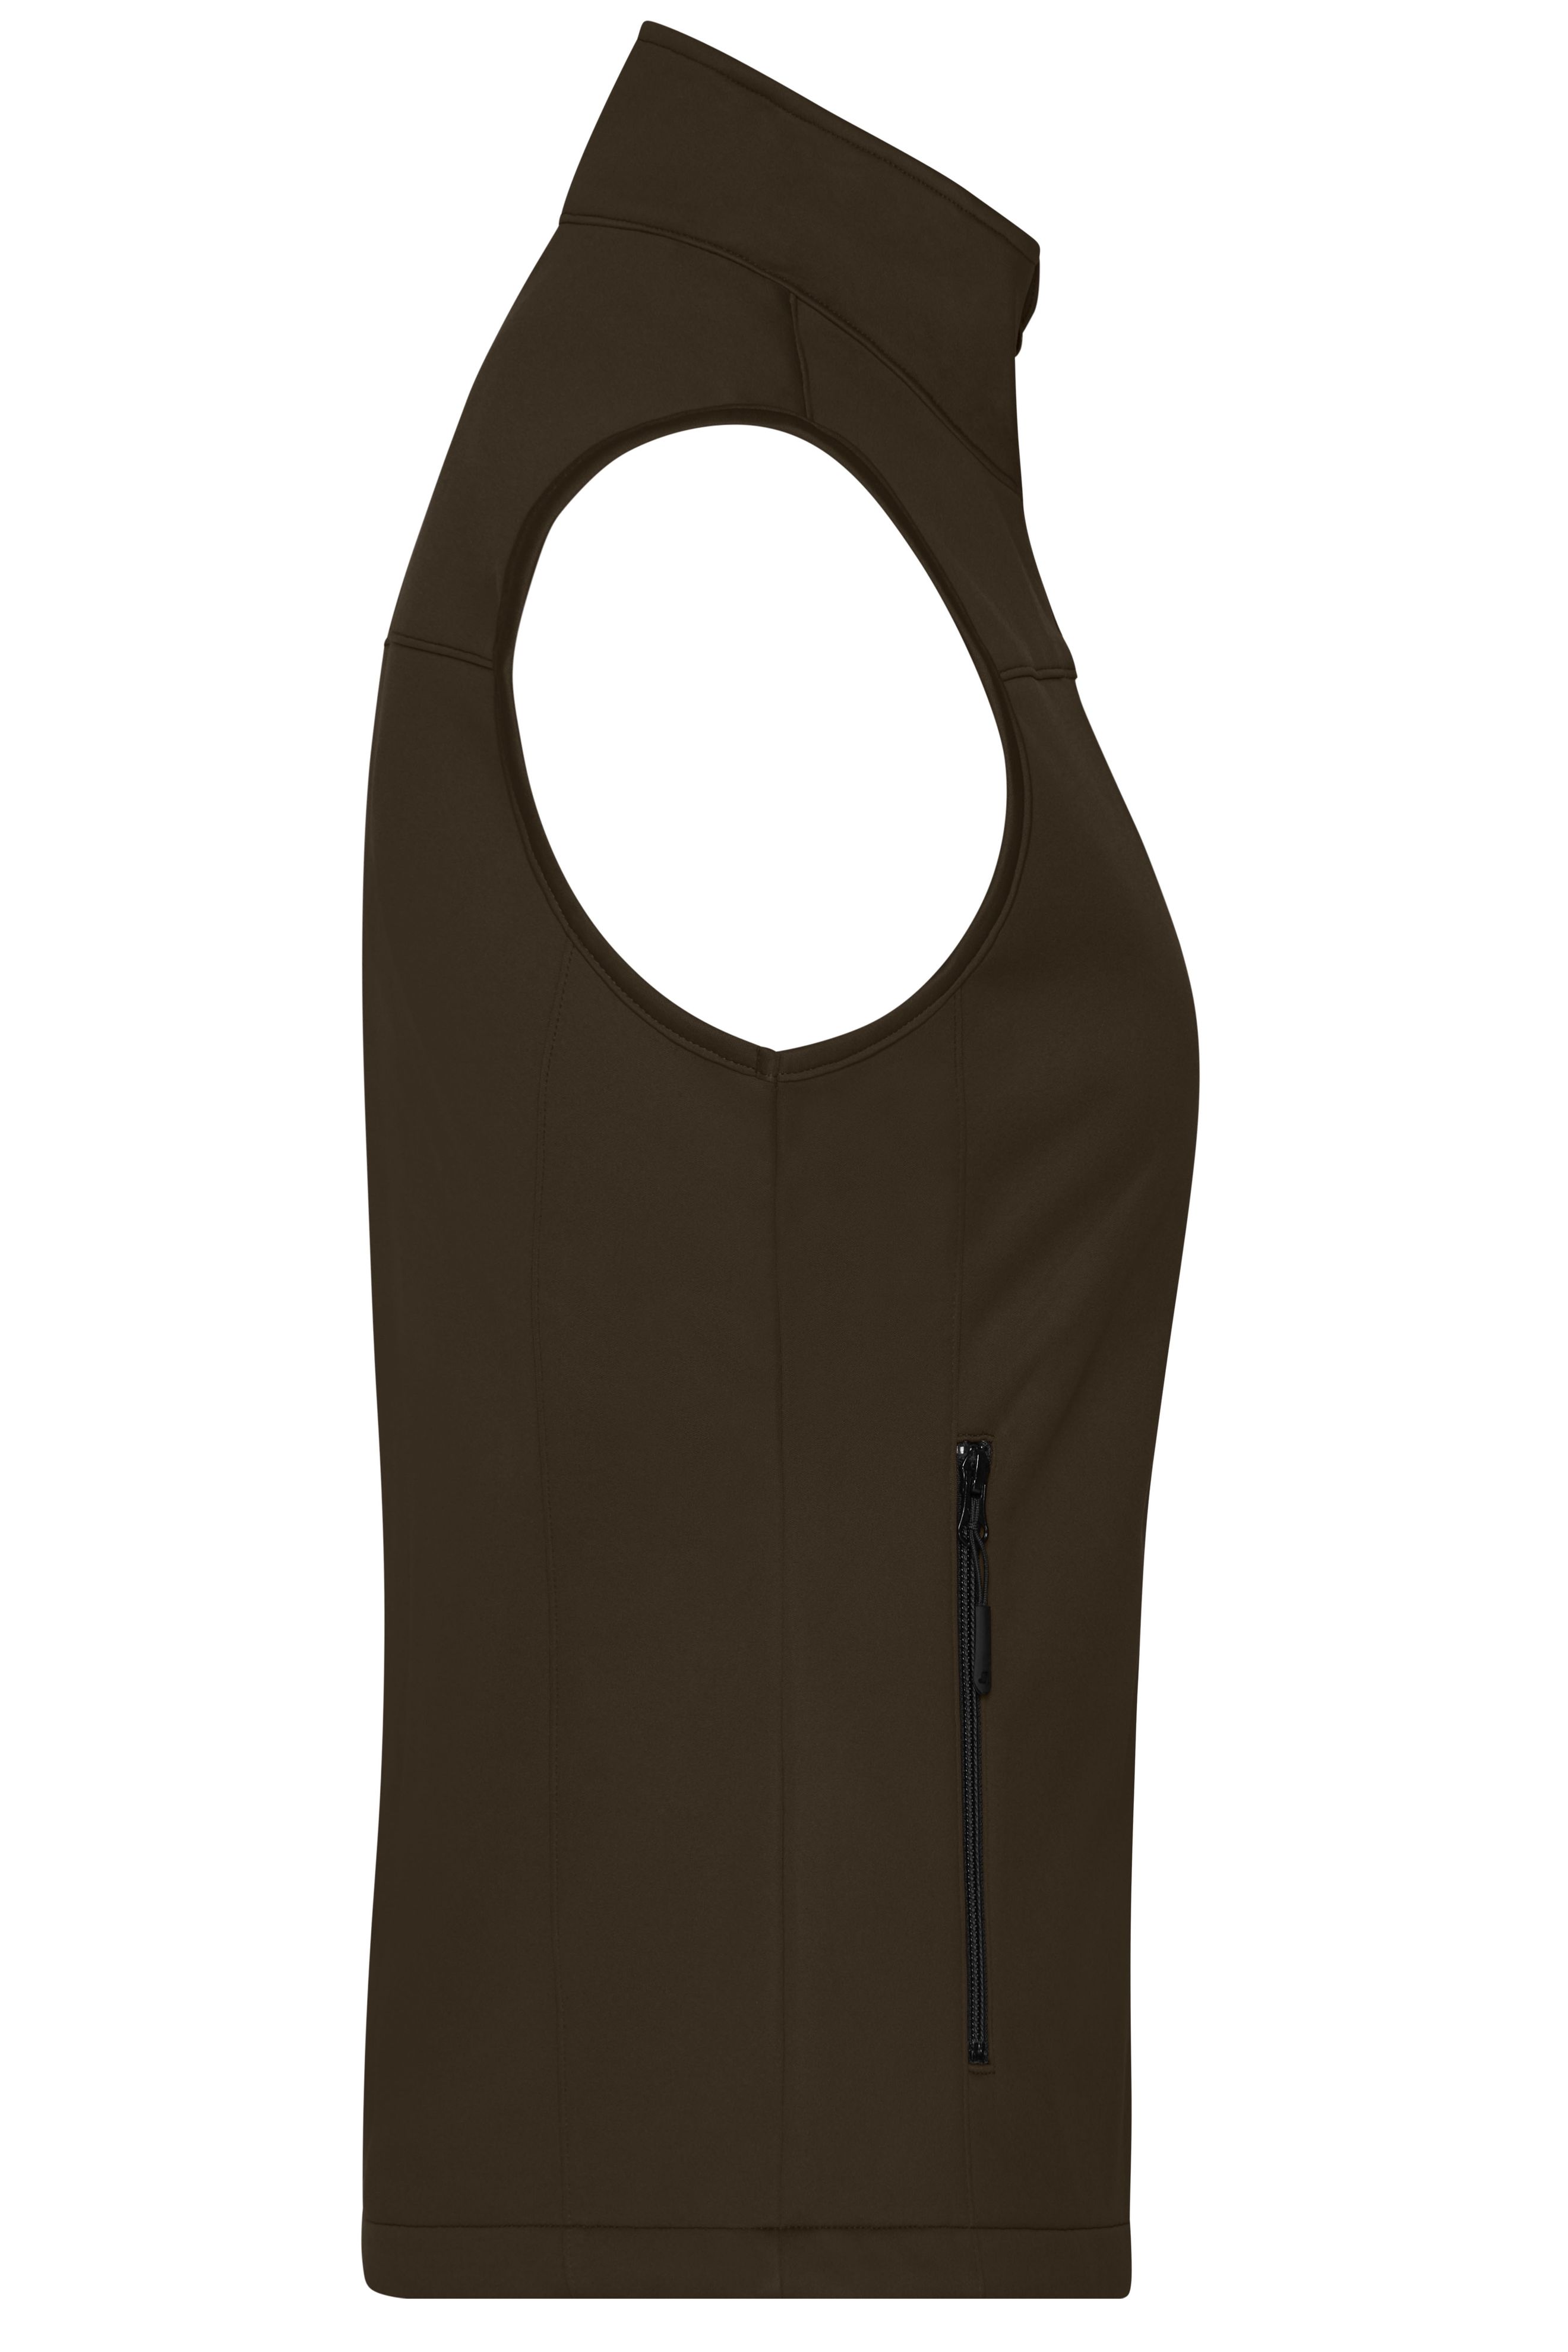 Ladies' Softshell Vest JN1169 Klassische Softshellweste im sportlichen Design aus recyceltem Polyester